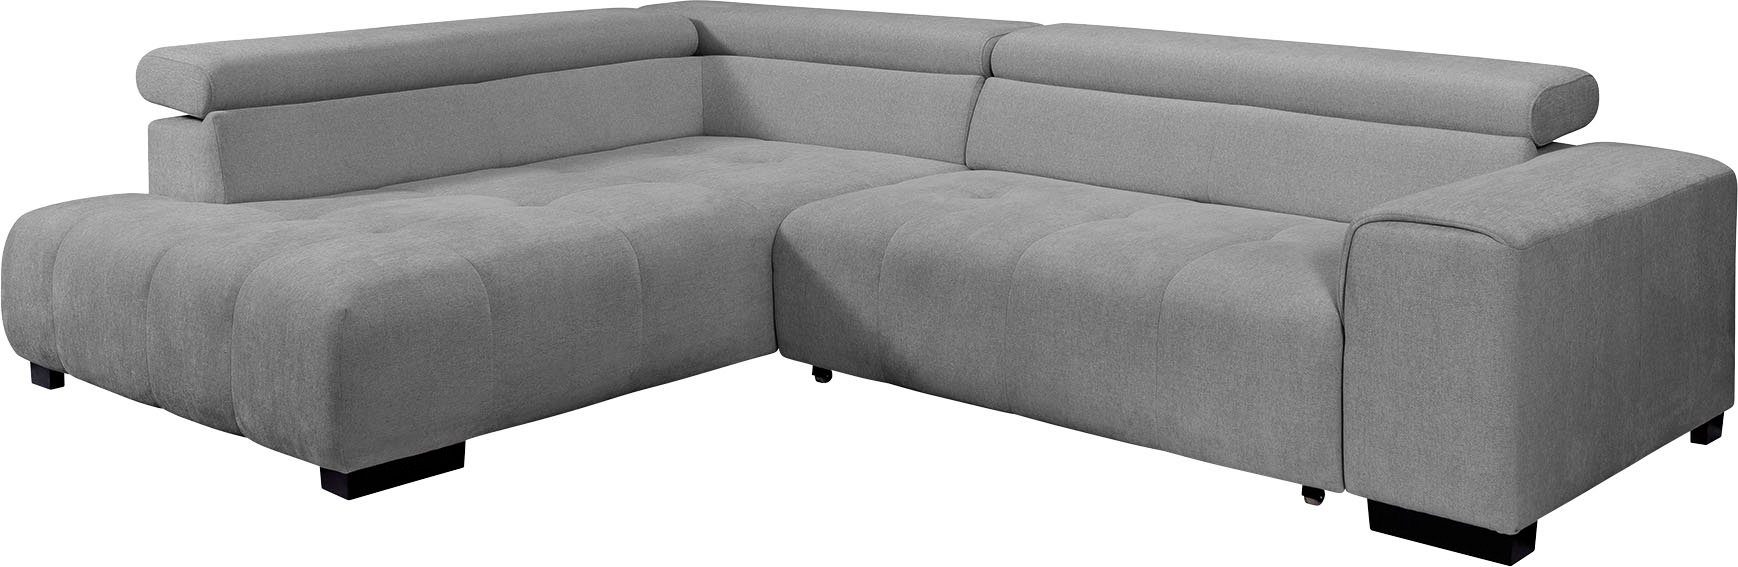 exxpo und verstellbaren Bettfunktion sofa - mit Kissen fashion Ecksofa, 3 Kopfstützen, wahlweise mit